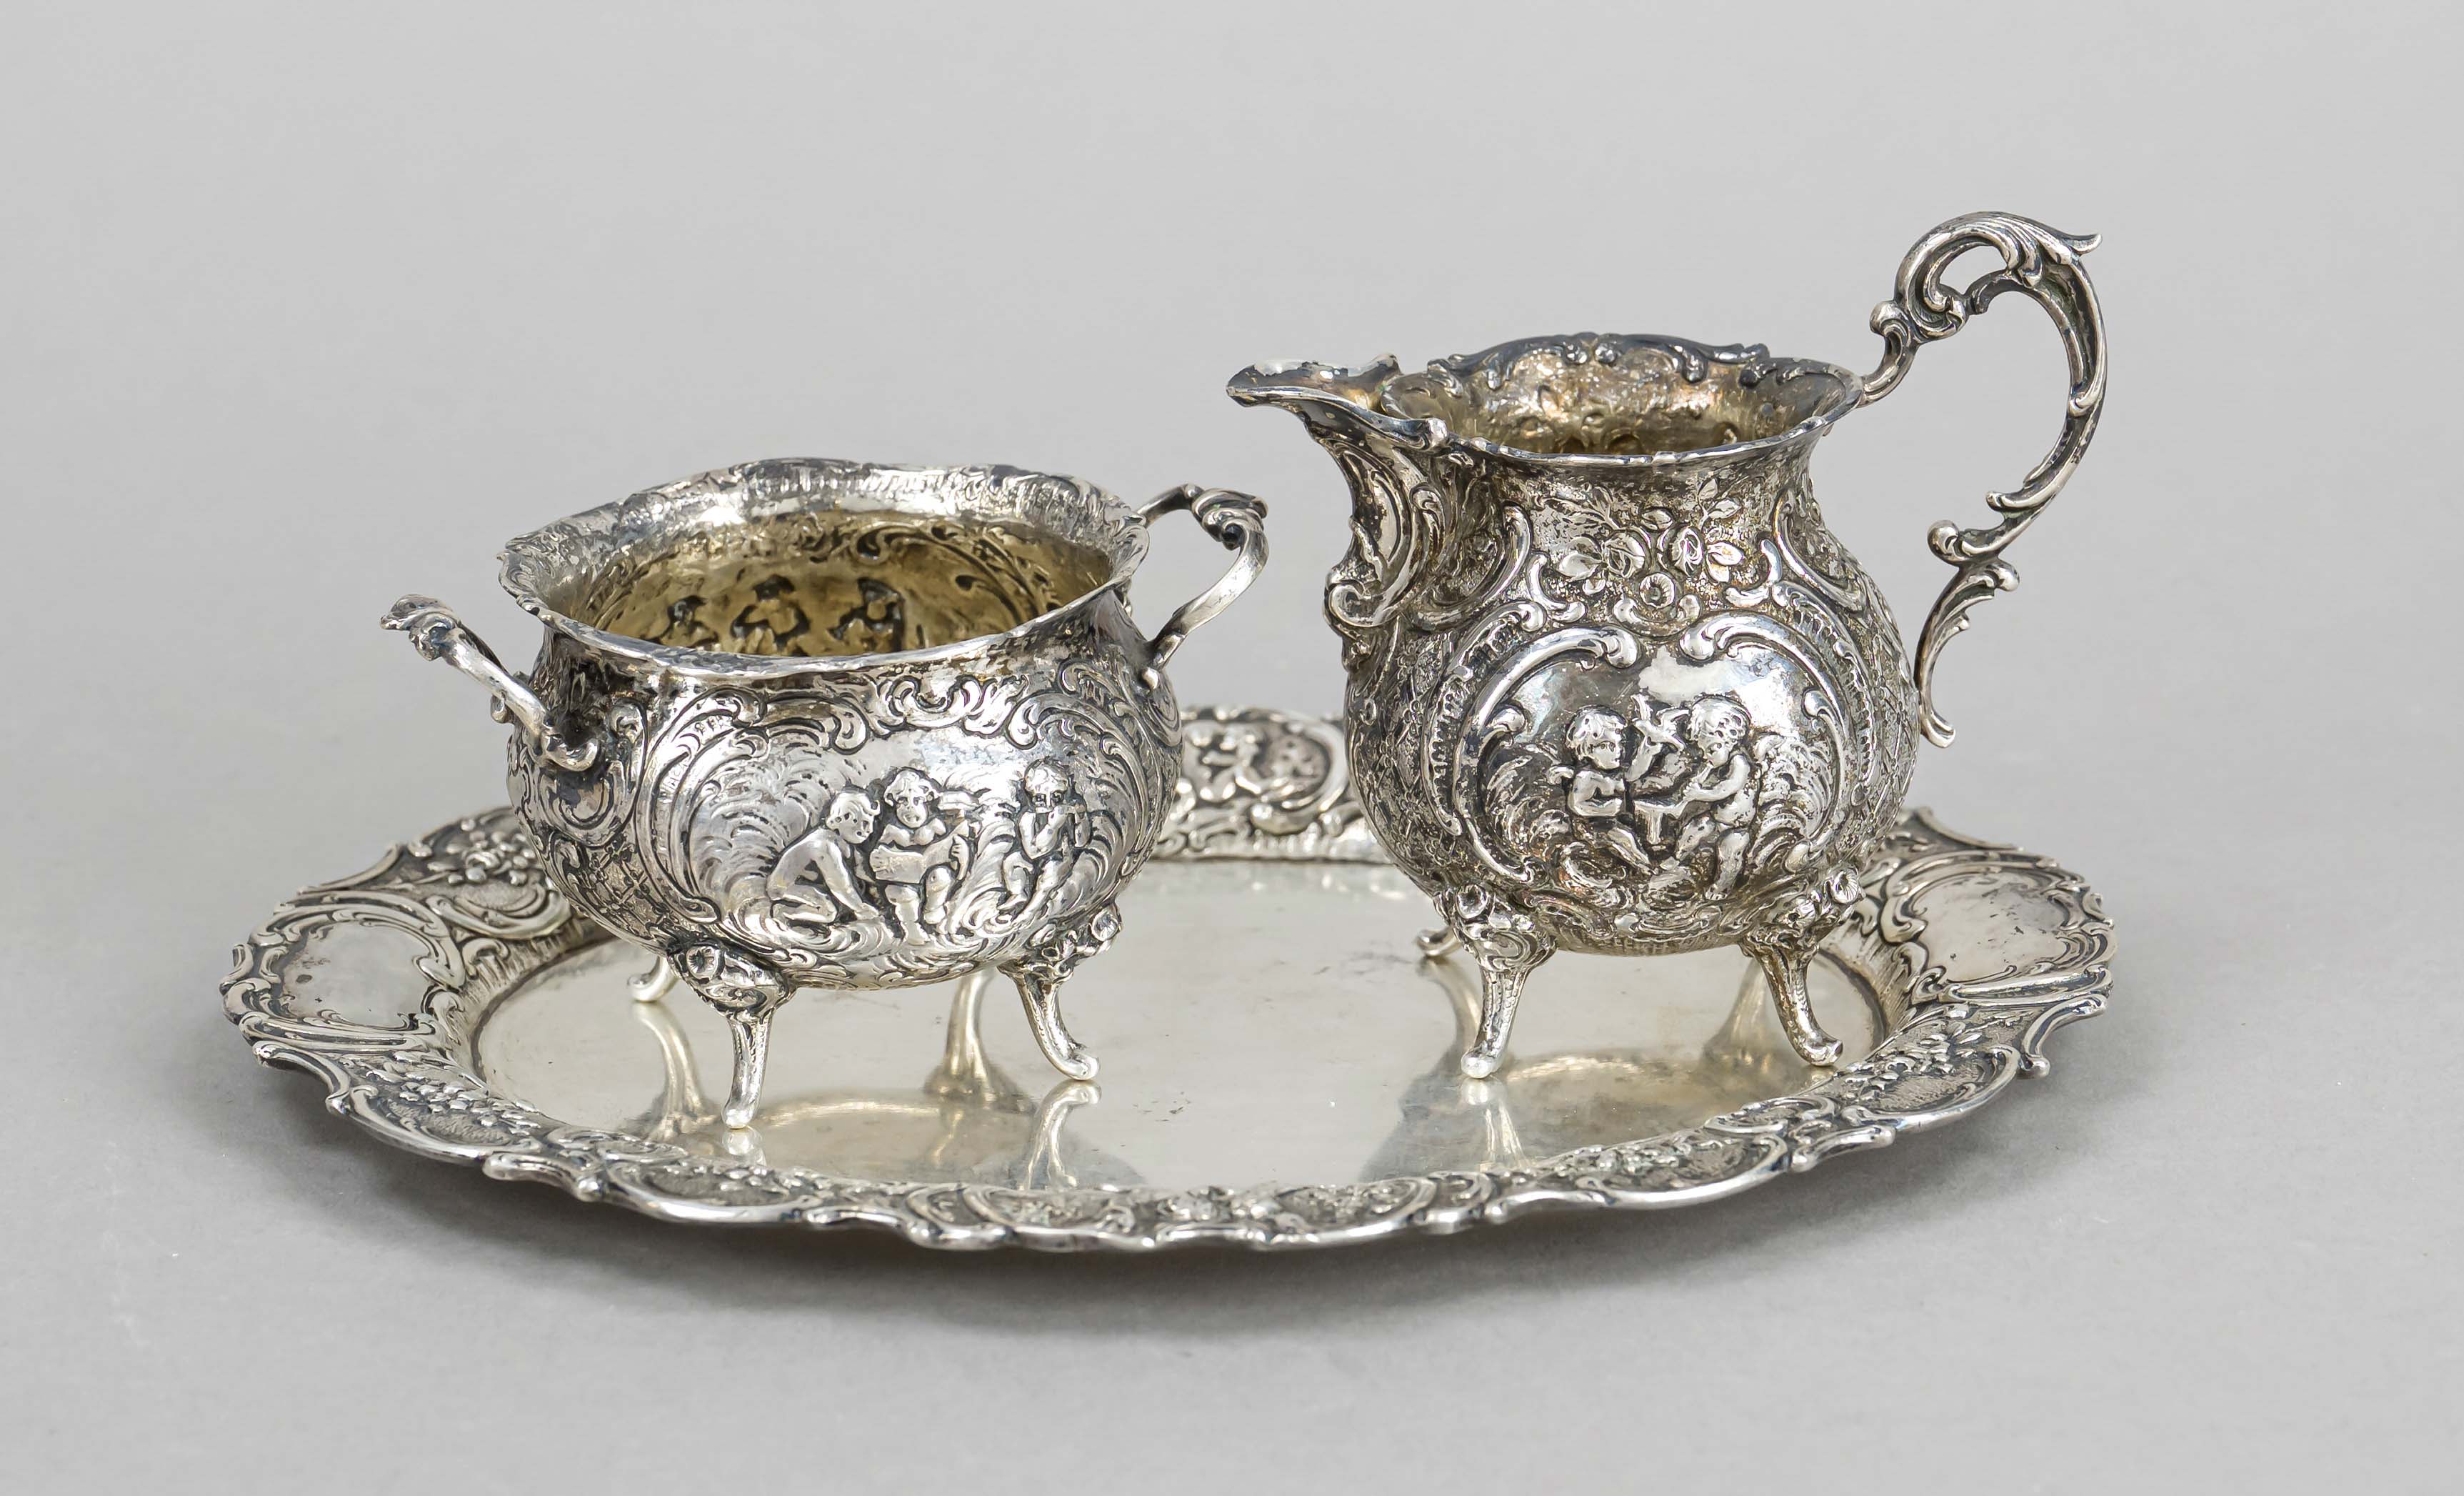 A sugar and cream jug on an oval tray, German, 20th century, probably Hanau, silver 800/000,